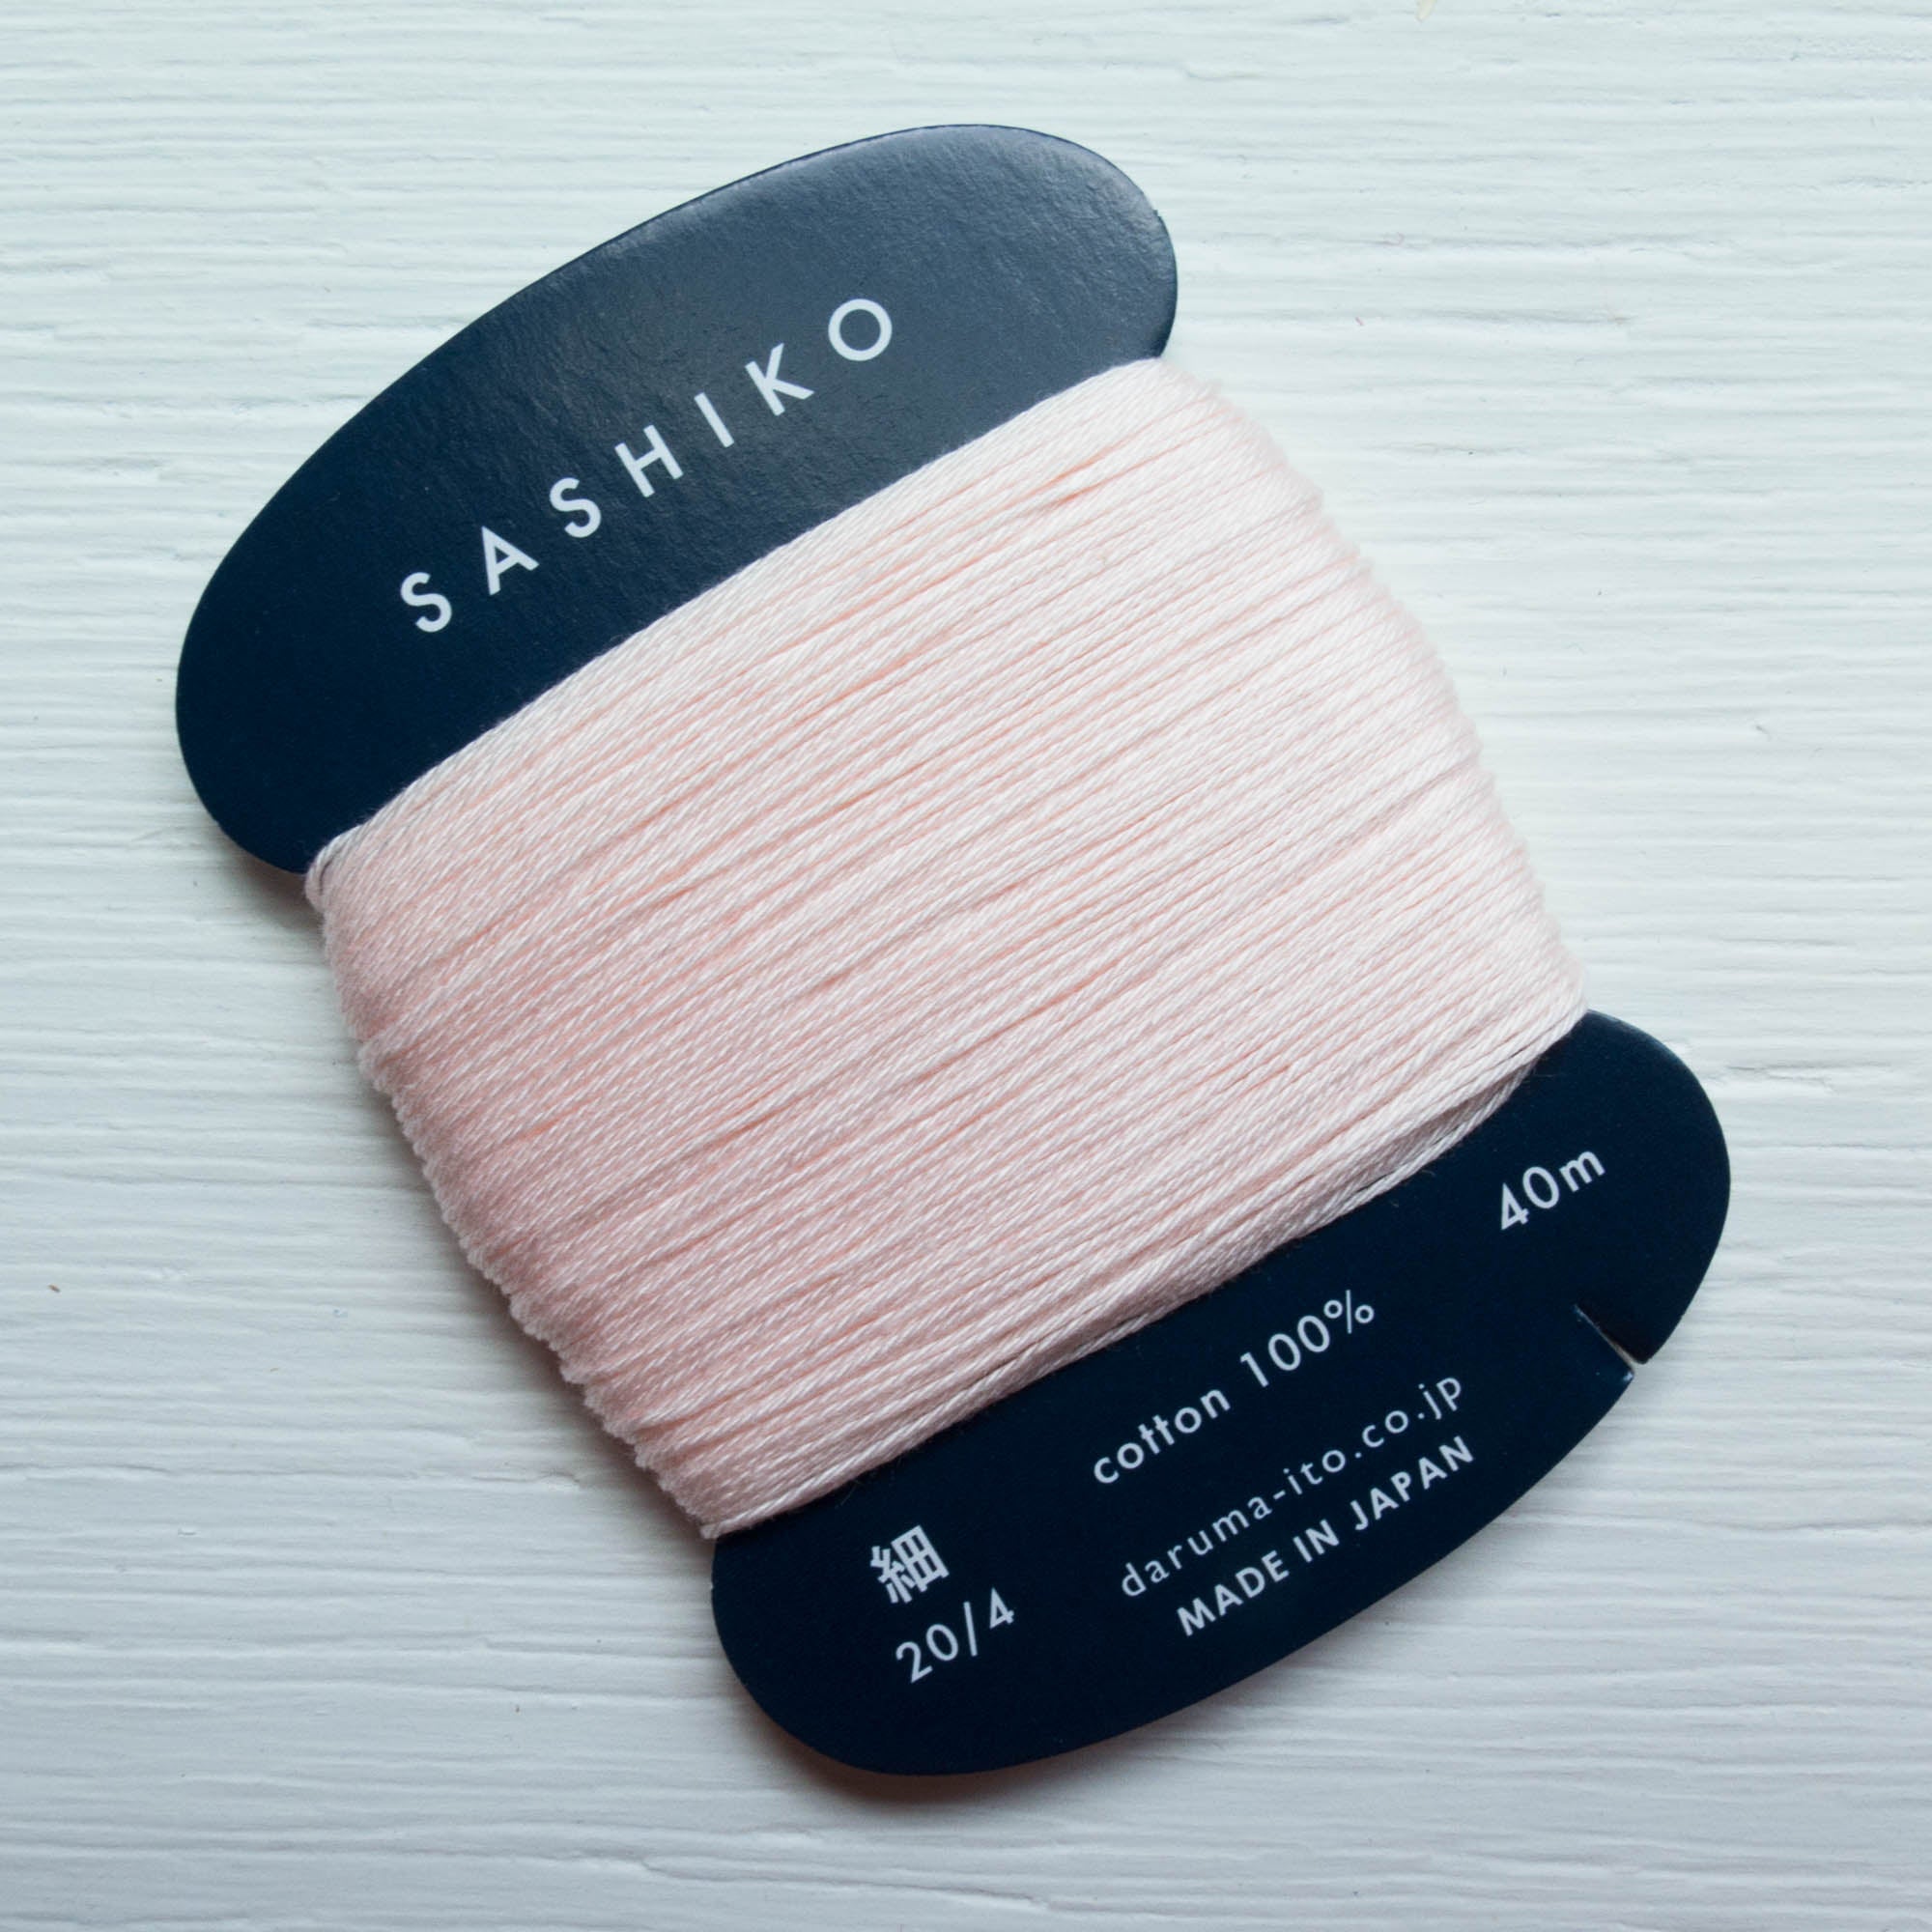 ORIM - Daruma - Sashiko Cotton Thread 20/6 - 0209 - Cherry Blossom